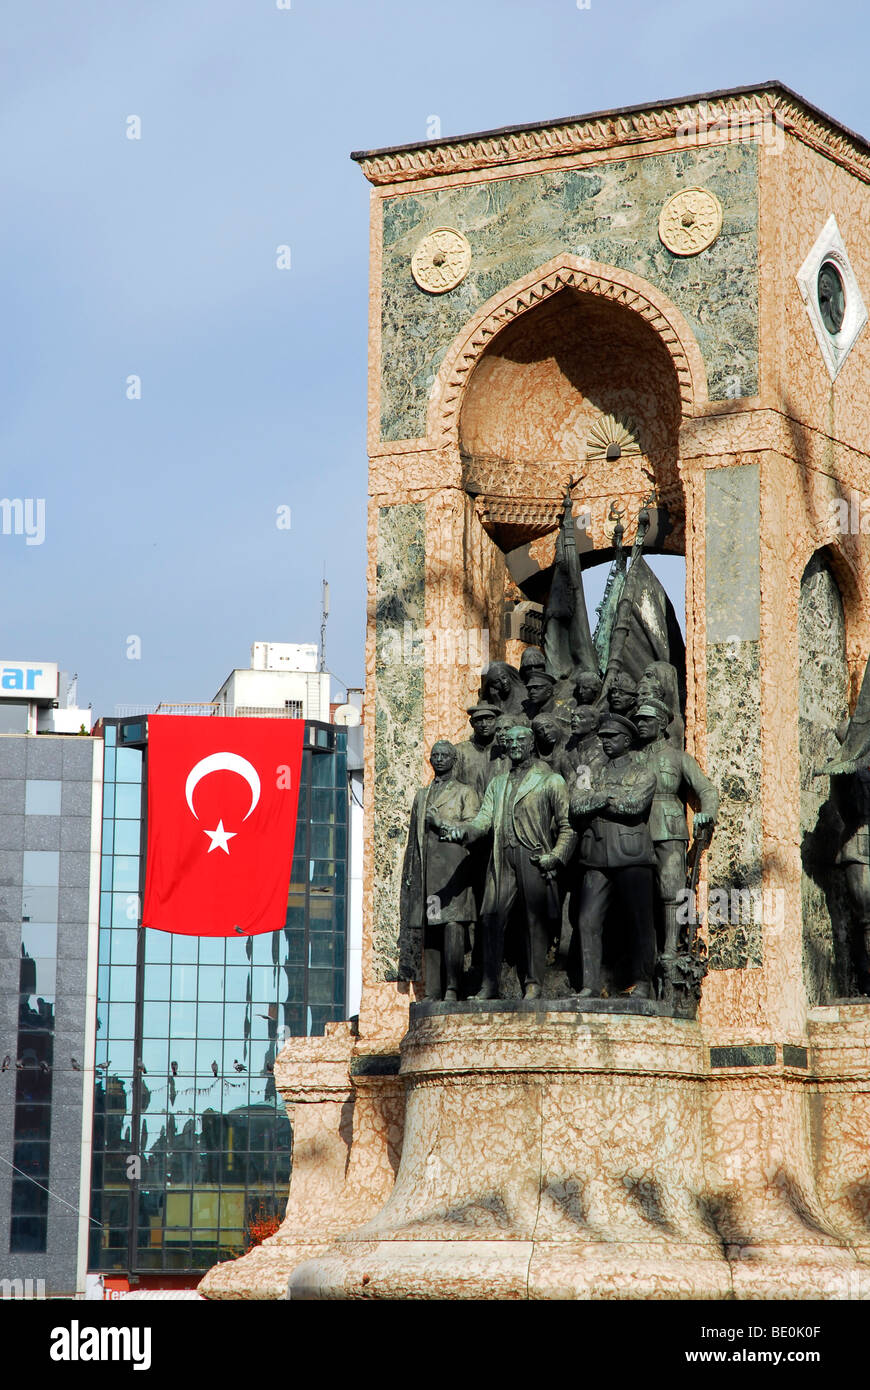 Monumento di Ataturk e bandiera nazionale in occasione del festival annuale della Repubblica su Ottobre 29th, Piazza Taksim Taksim Cumhuriyet Abi Foto Stock